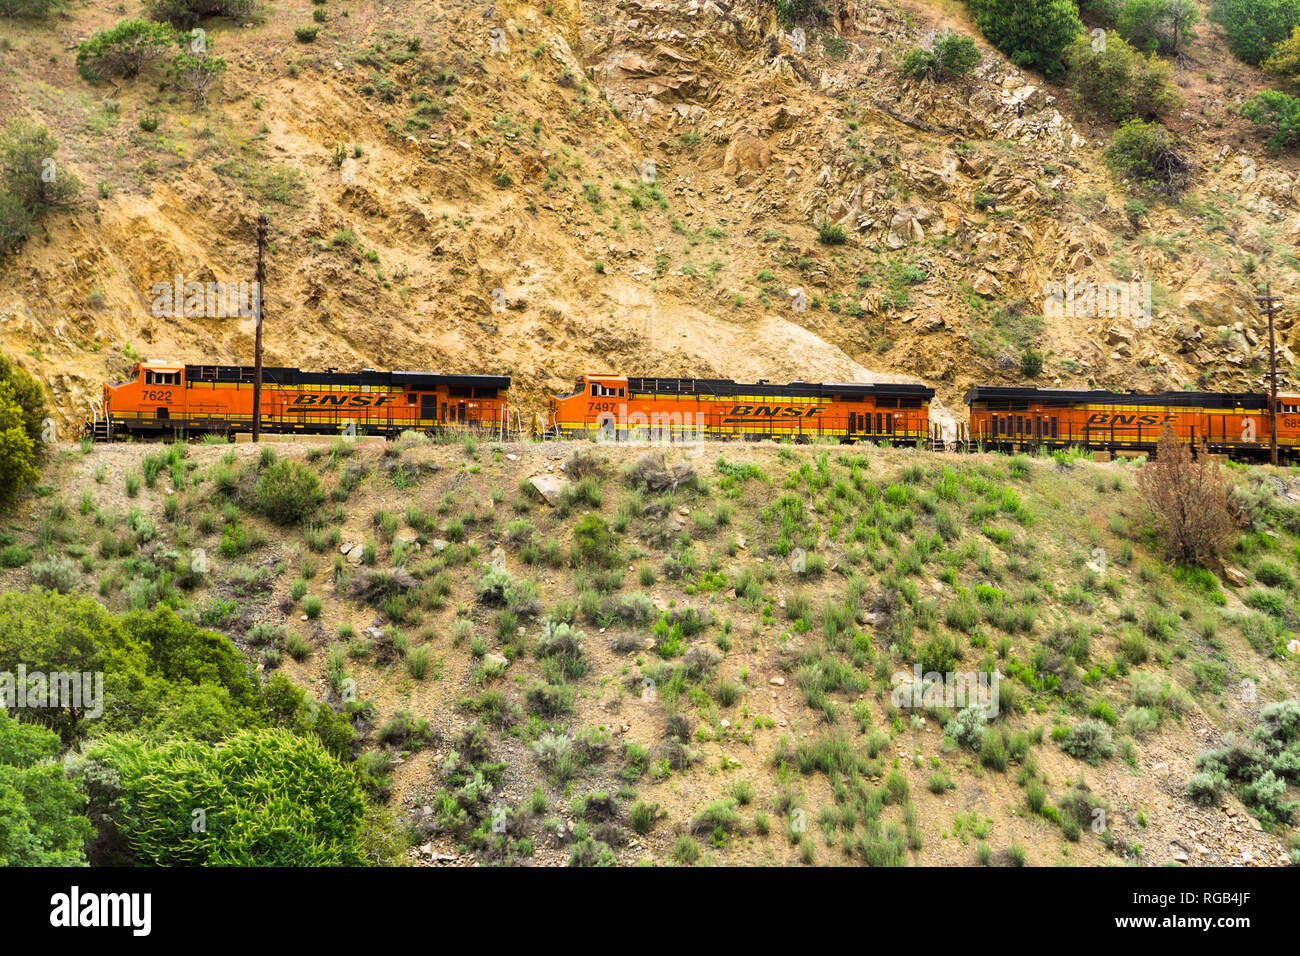 Mai 25, 2018 Tehachapi/CA/USA - unverwechselbar orange und gelb Burlington Northern Santa Fe (Bnsf) Motoren durch die Berge reisen Stockfoto